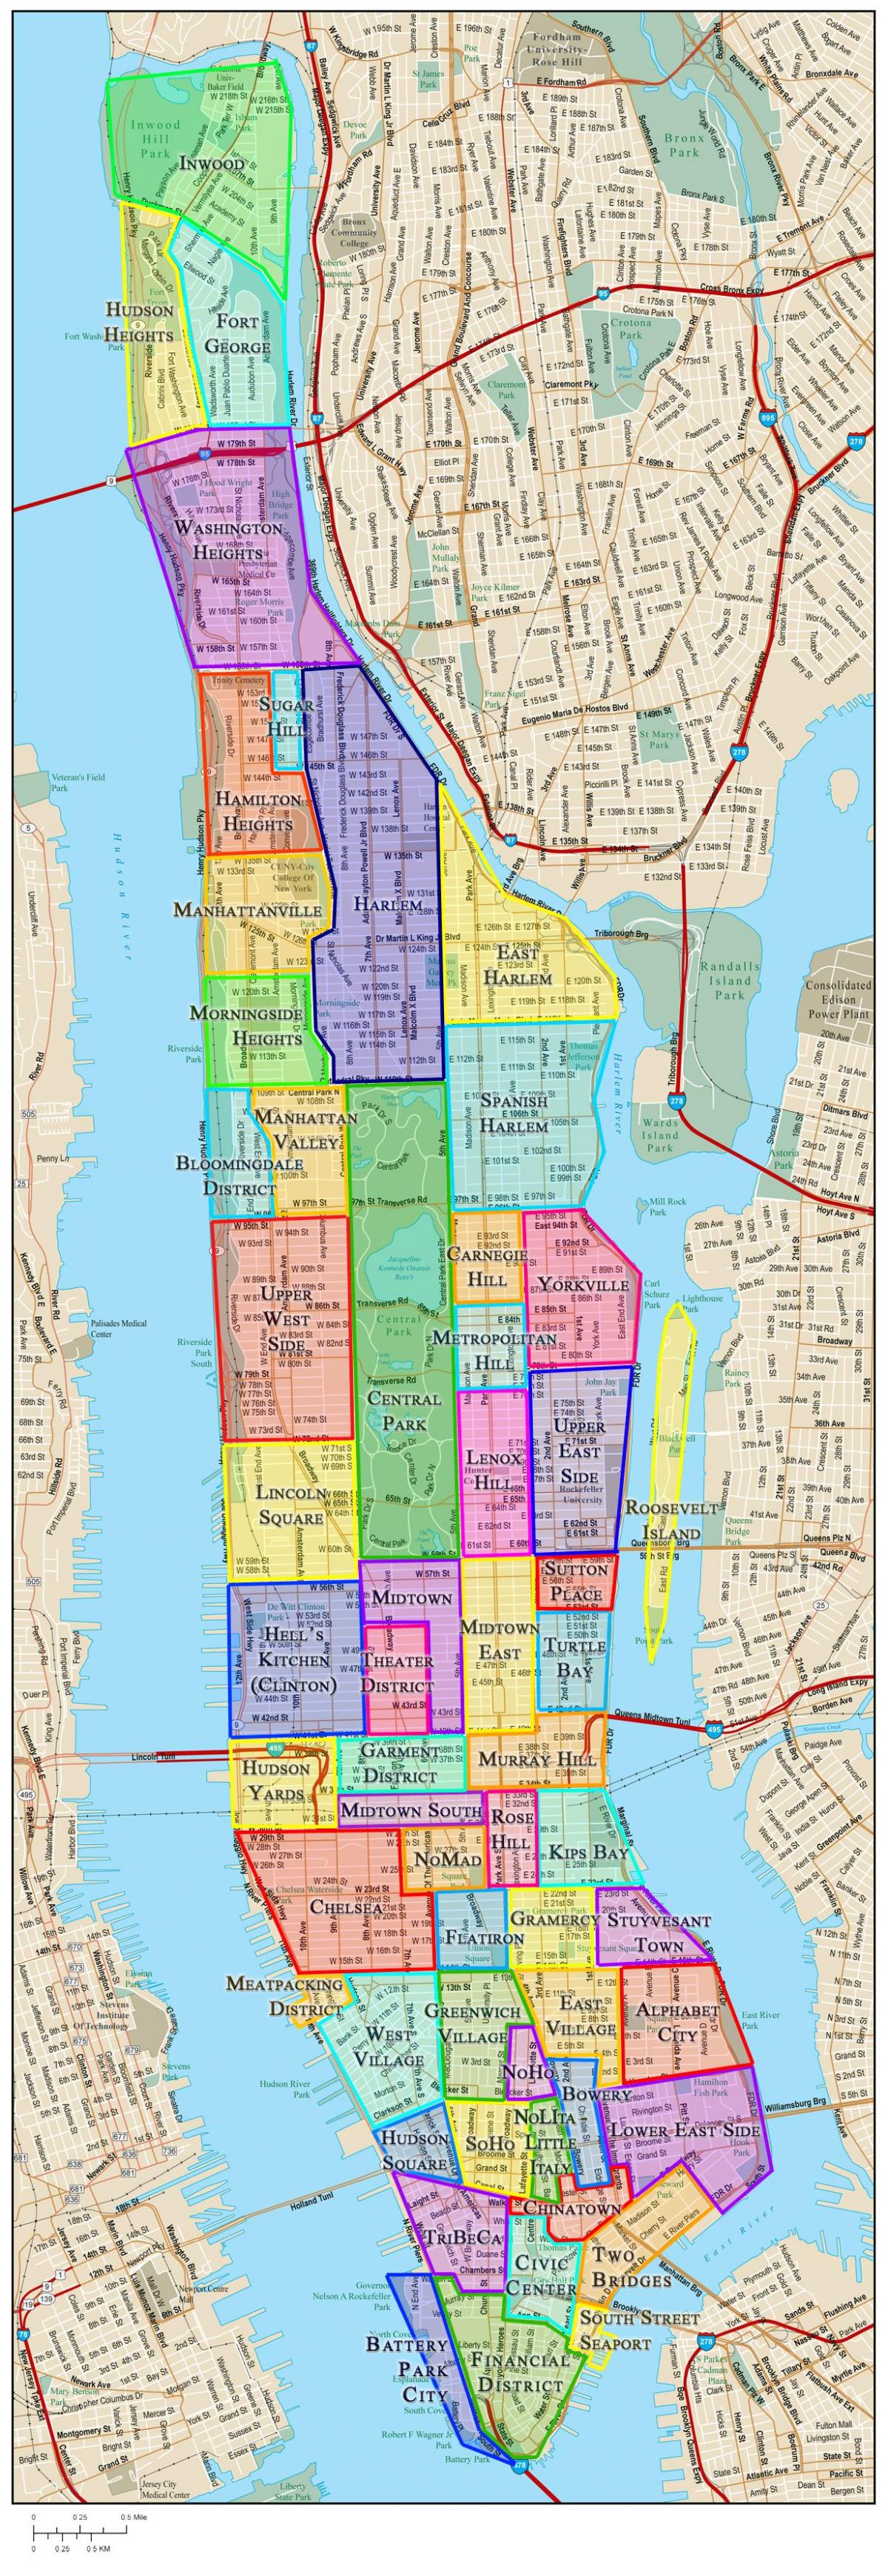 Mappa del quartiere di Manhattan